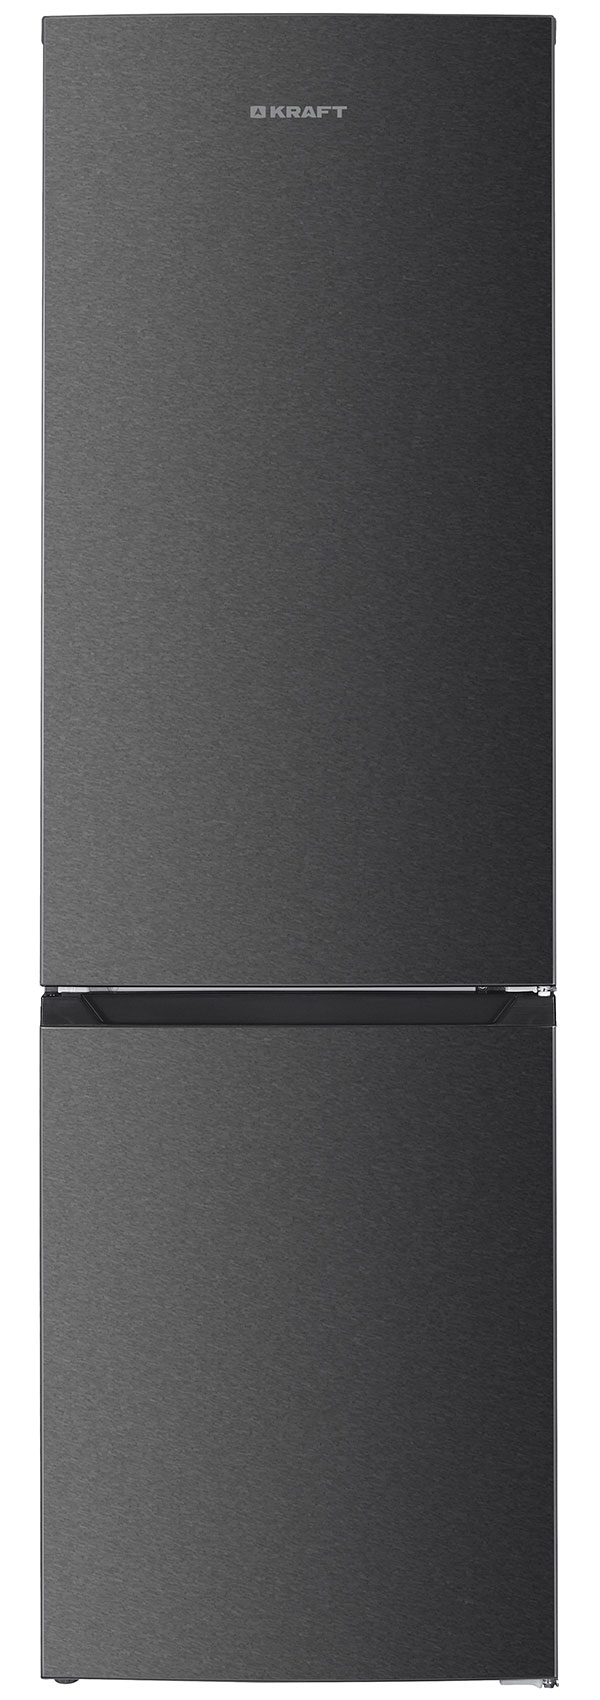 Холодильник KRAFT KF-NF293D черный беспроводной цифровой термометр для холодильника звуковая сигнализация внутренний наружный термометр